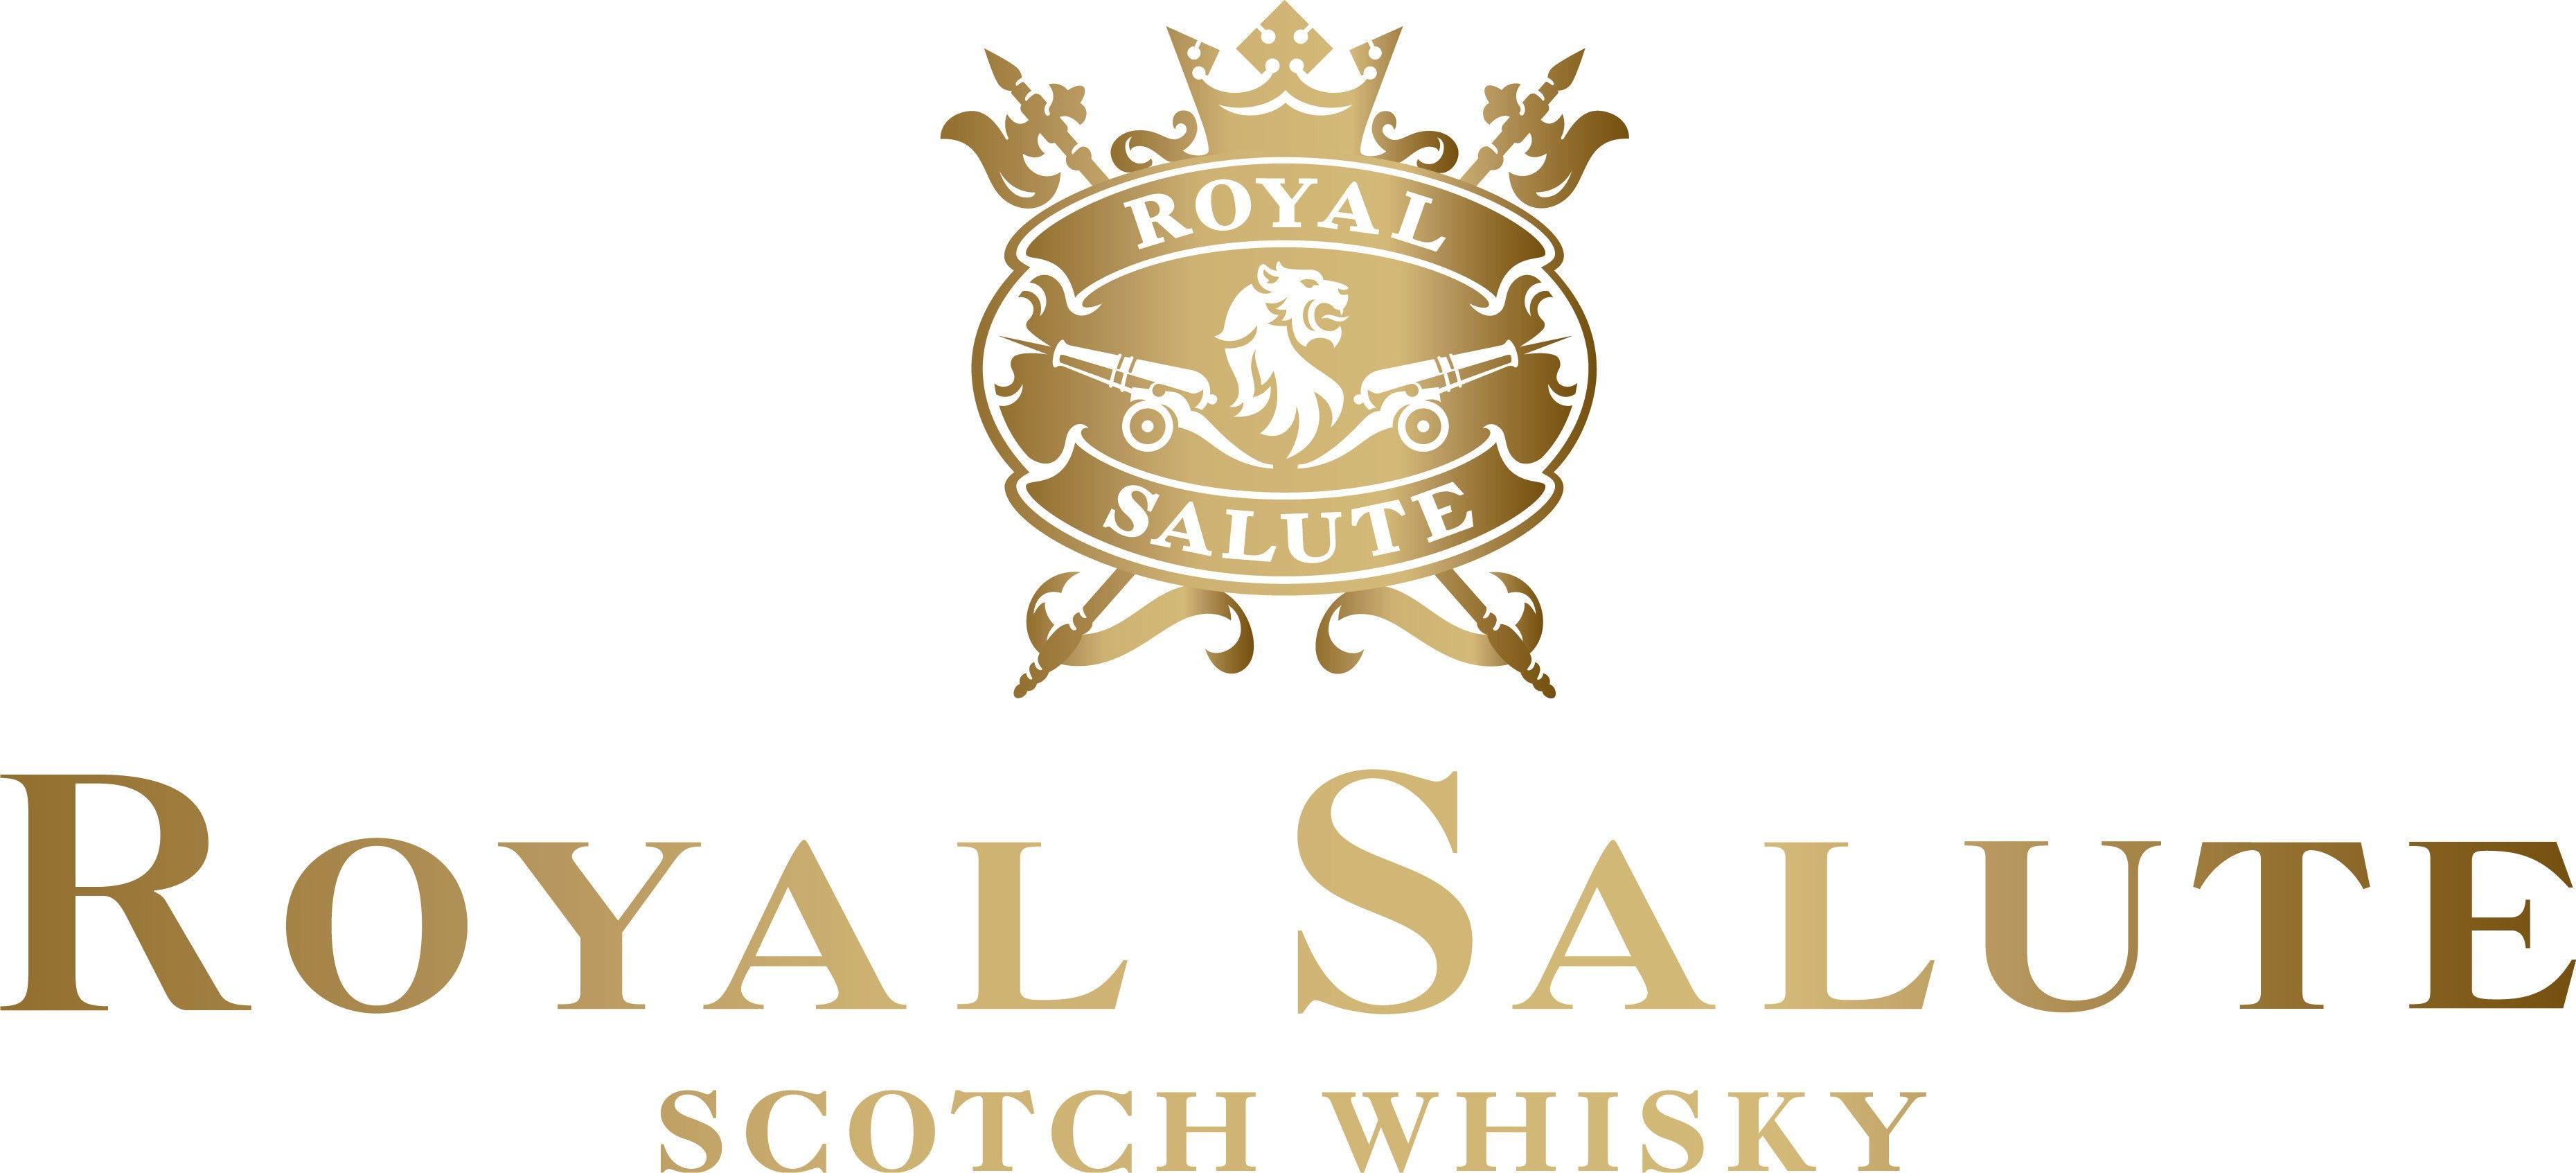 Scotch Whiskey Logo - WhiskyIntelligence.com Blog Archive Royal Salute Launches